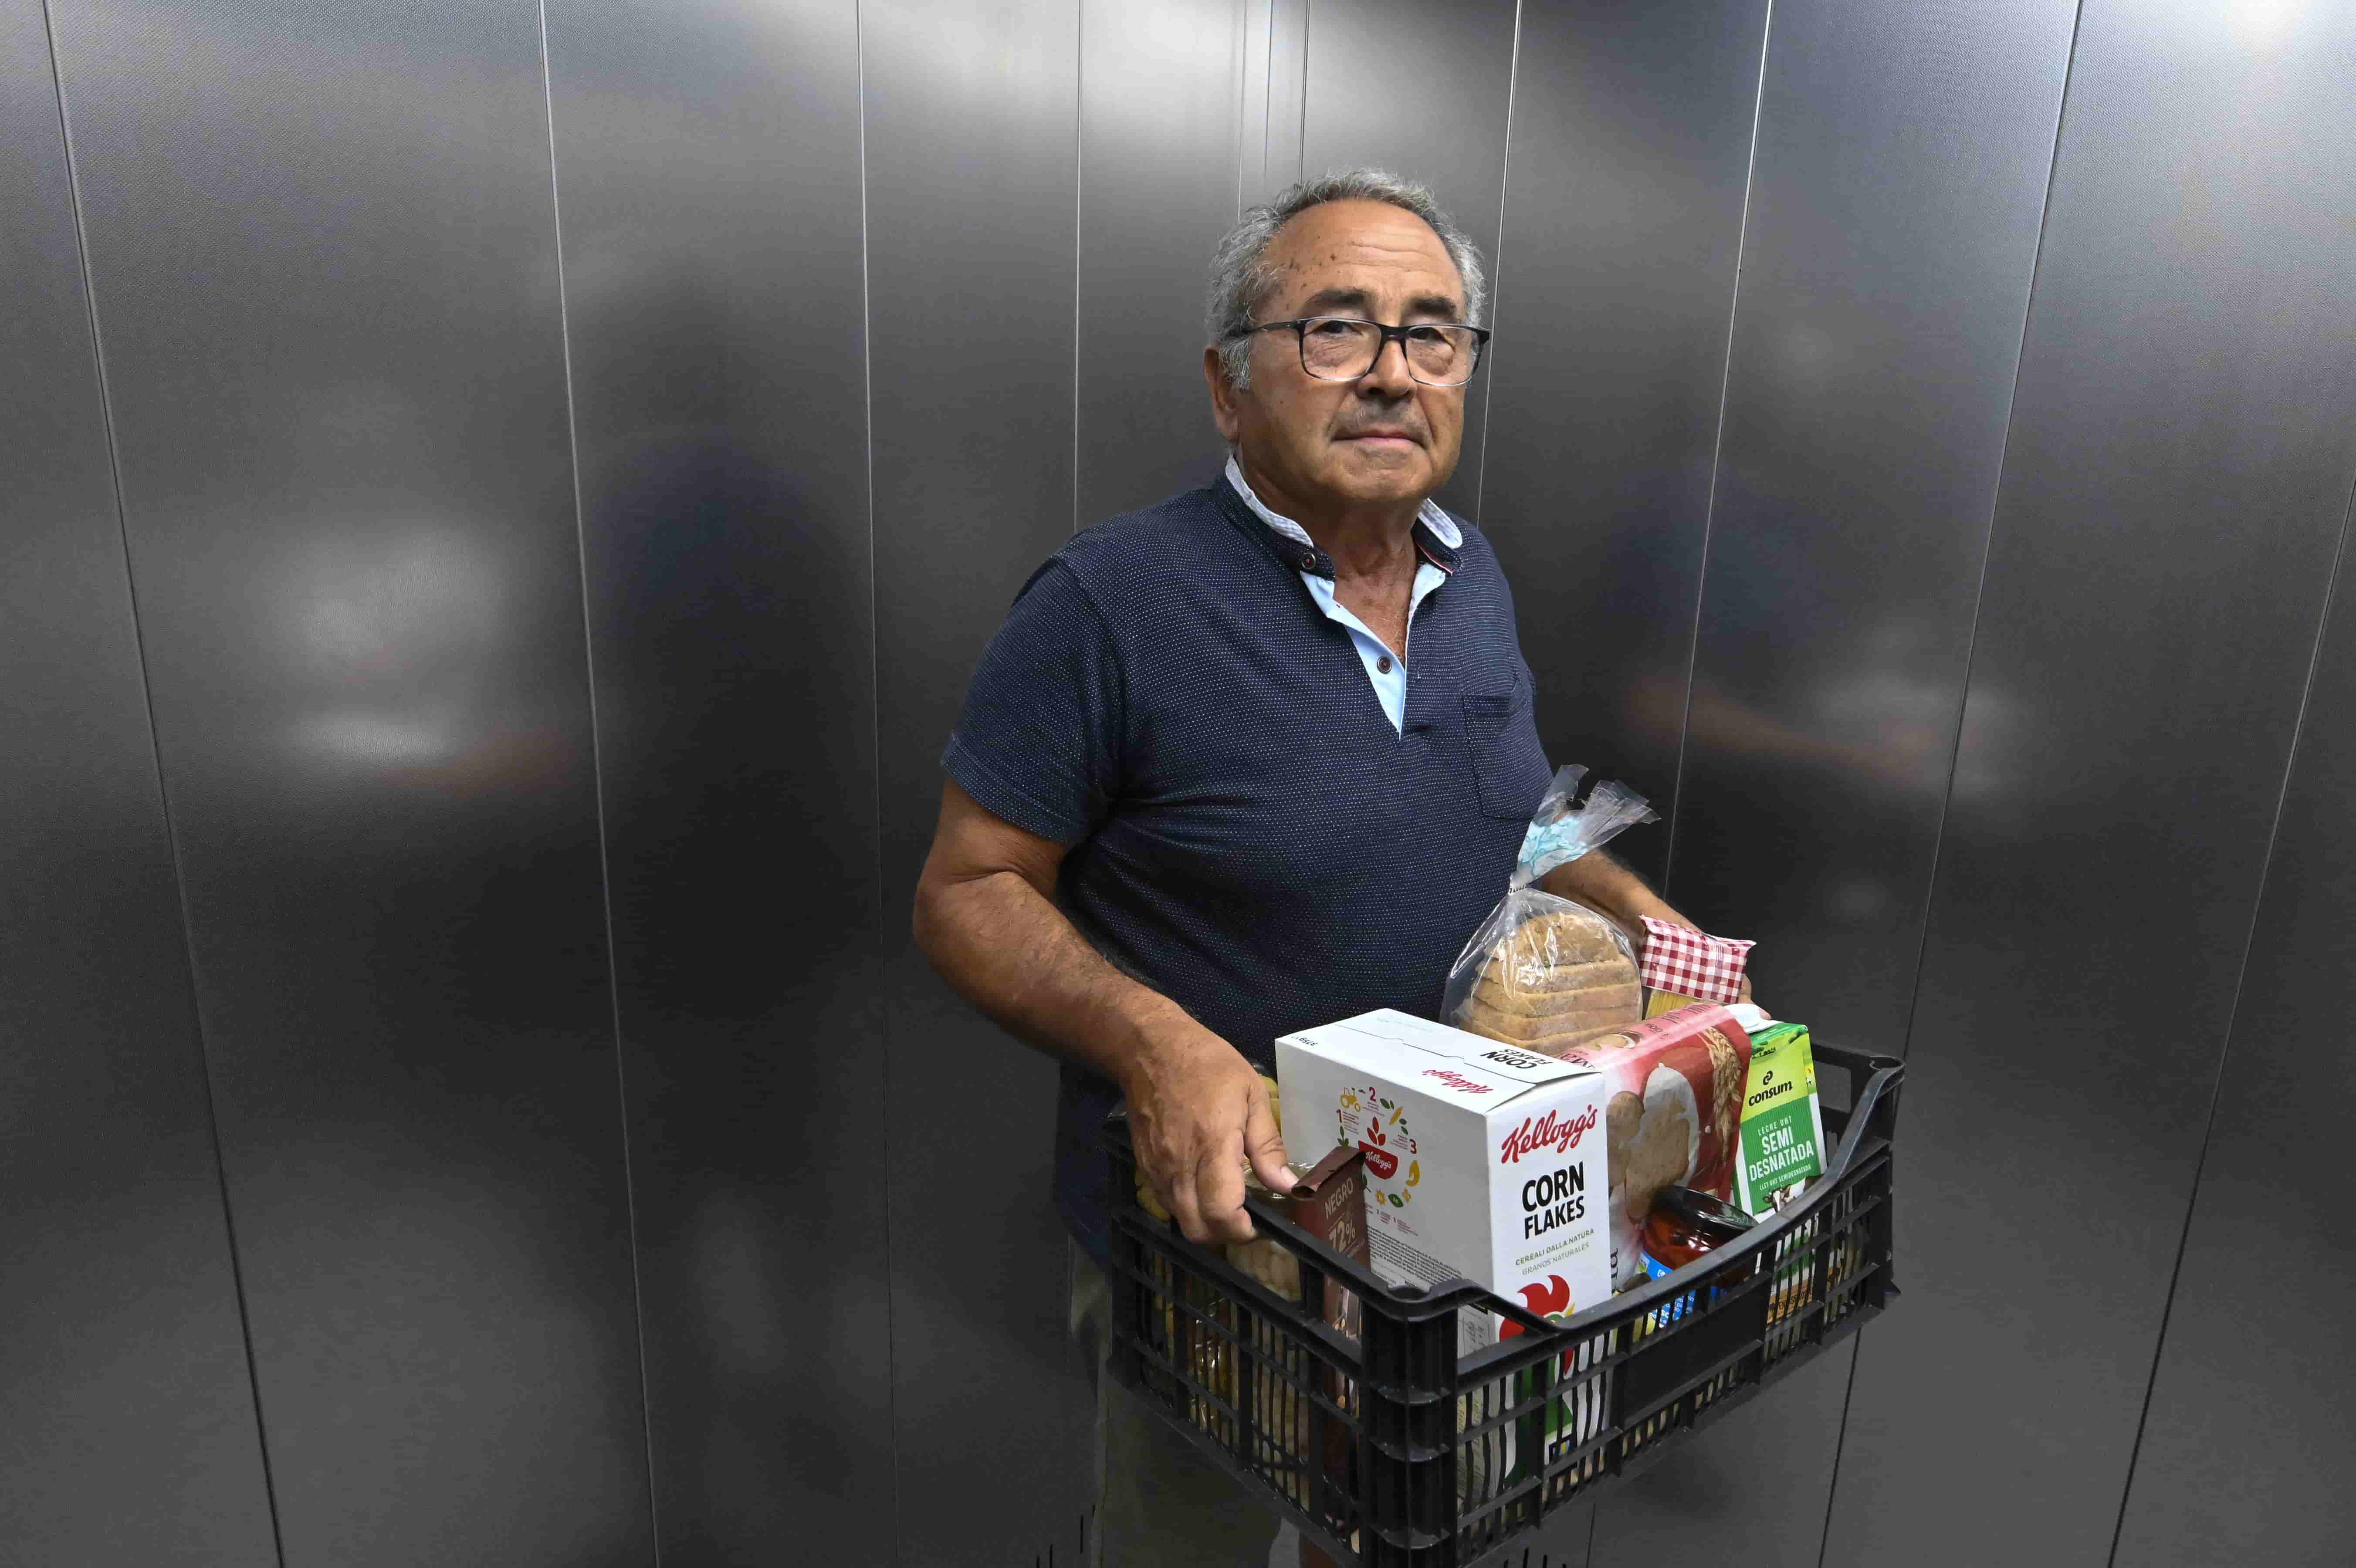 Ramon, voluntario de la entidad social de Veí a Veí, coordina la entrega de lotes de alimentos en el barrio de Sant Antoni de Barcelona.